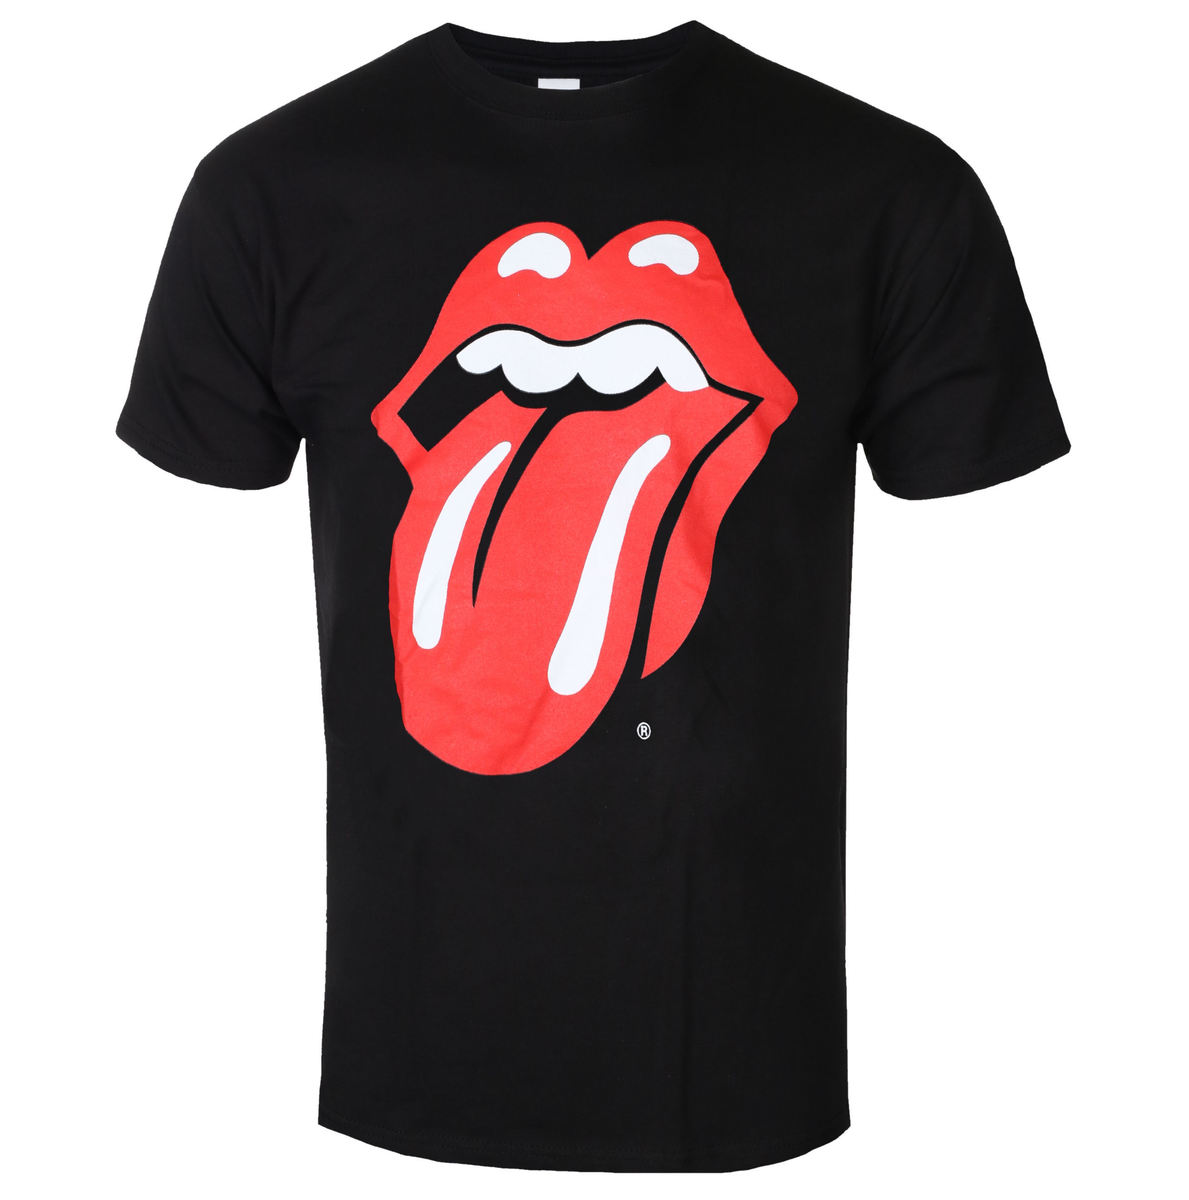 The Rolling Stones - Classic Tongue (Medium)